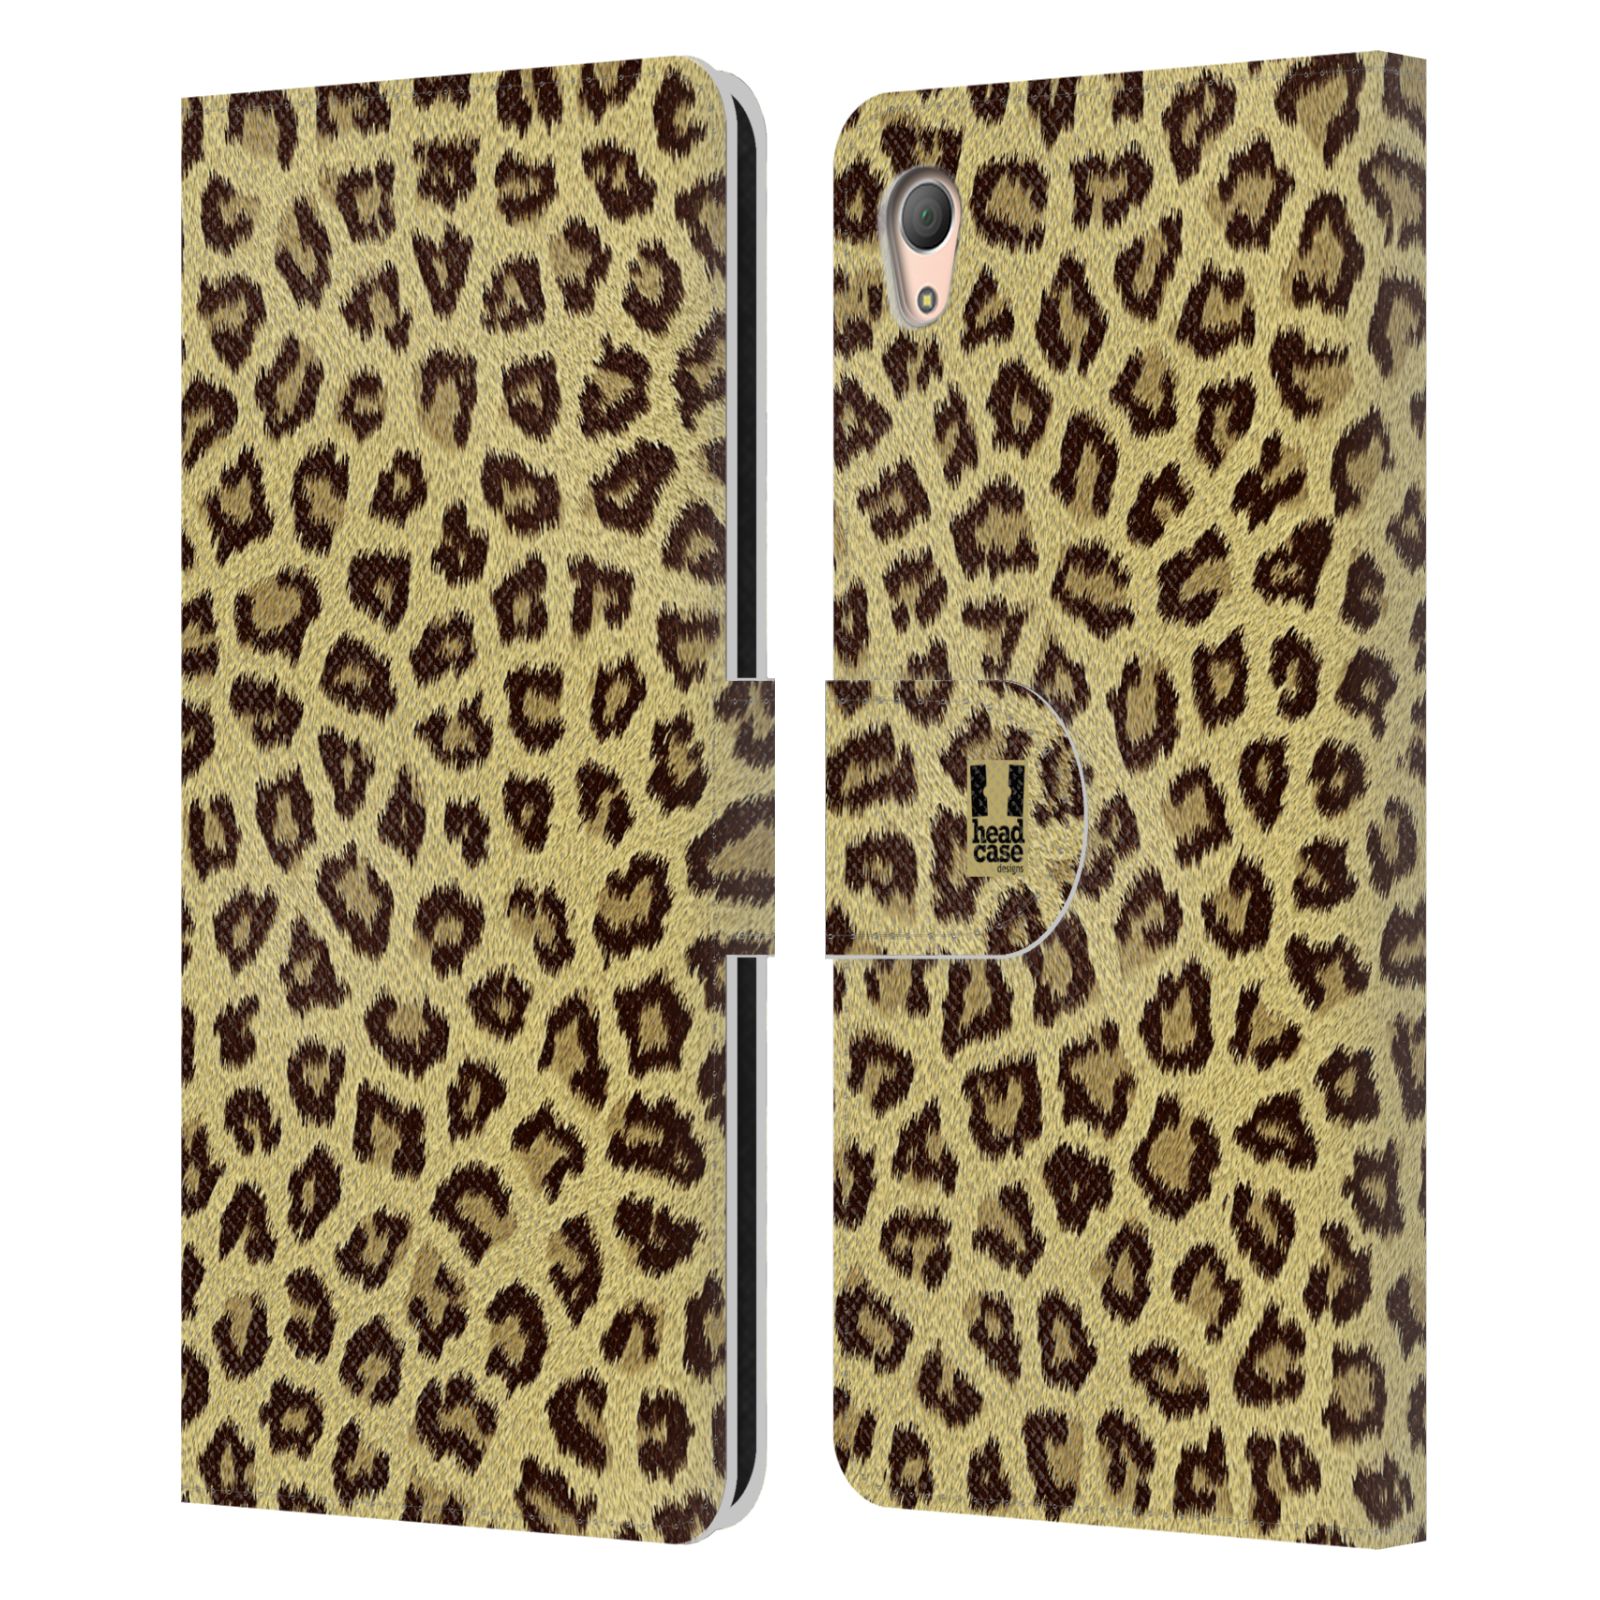 HEAD CASE Flipové pouzdro pro mobil SONY XPERIA Z3+ (PLUS) zvíře srst divoká kolekce jaguár, gepard